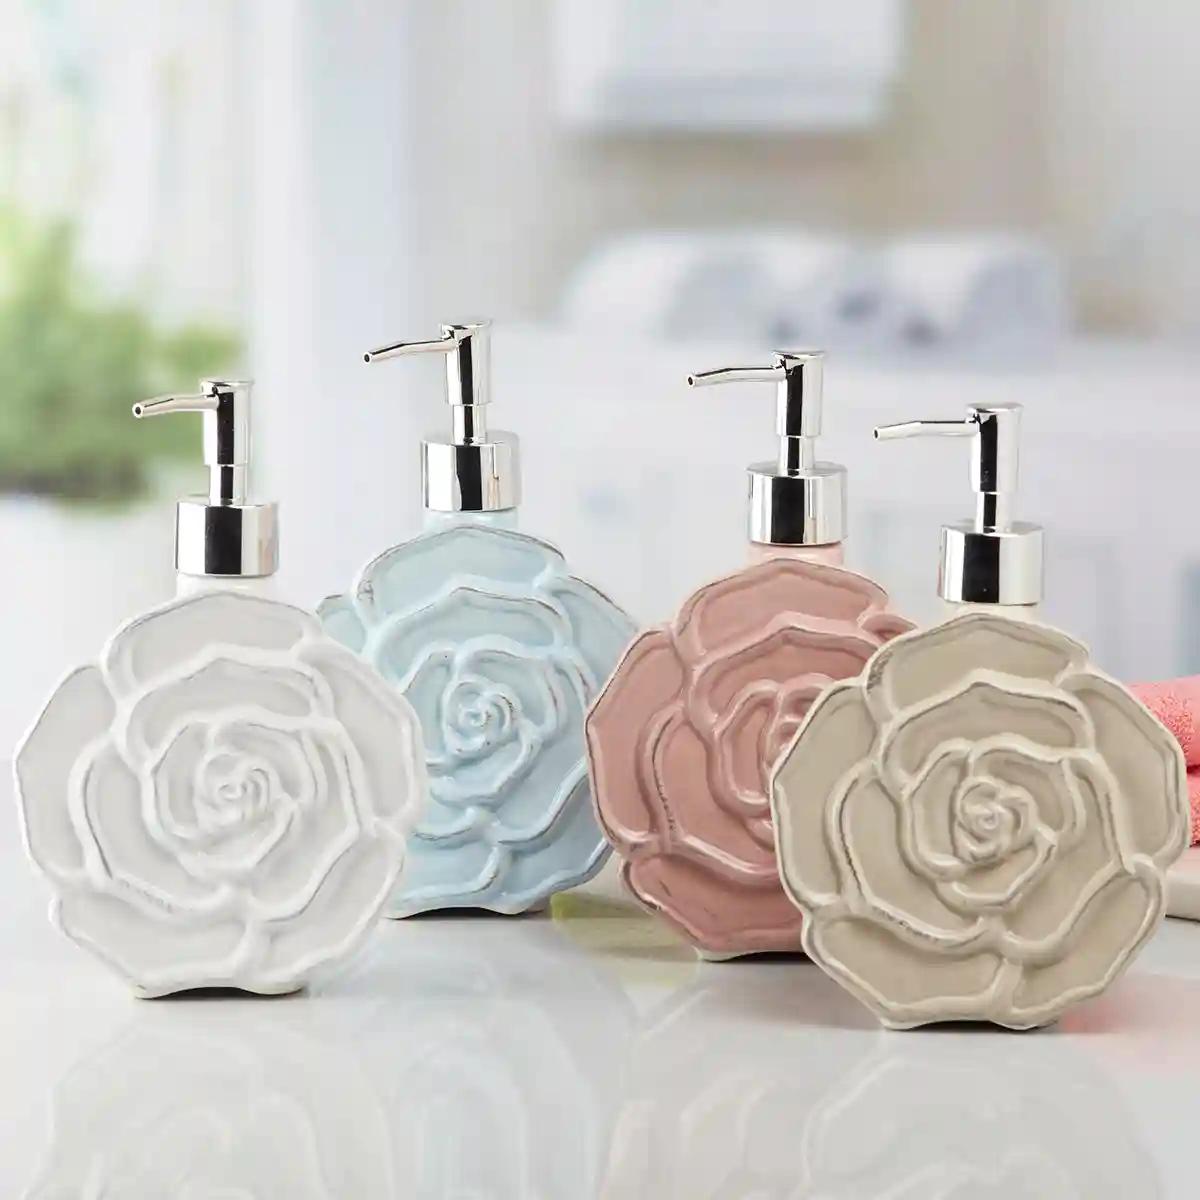 Kookee Ceramic Soap Dispenser for Bathroom handwash, refillable pump bottle for Kitchen hand wash basin, Set of 4 - Multicolor (10131)